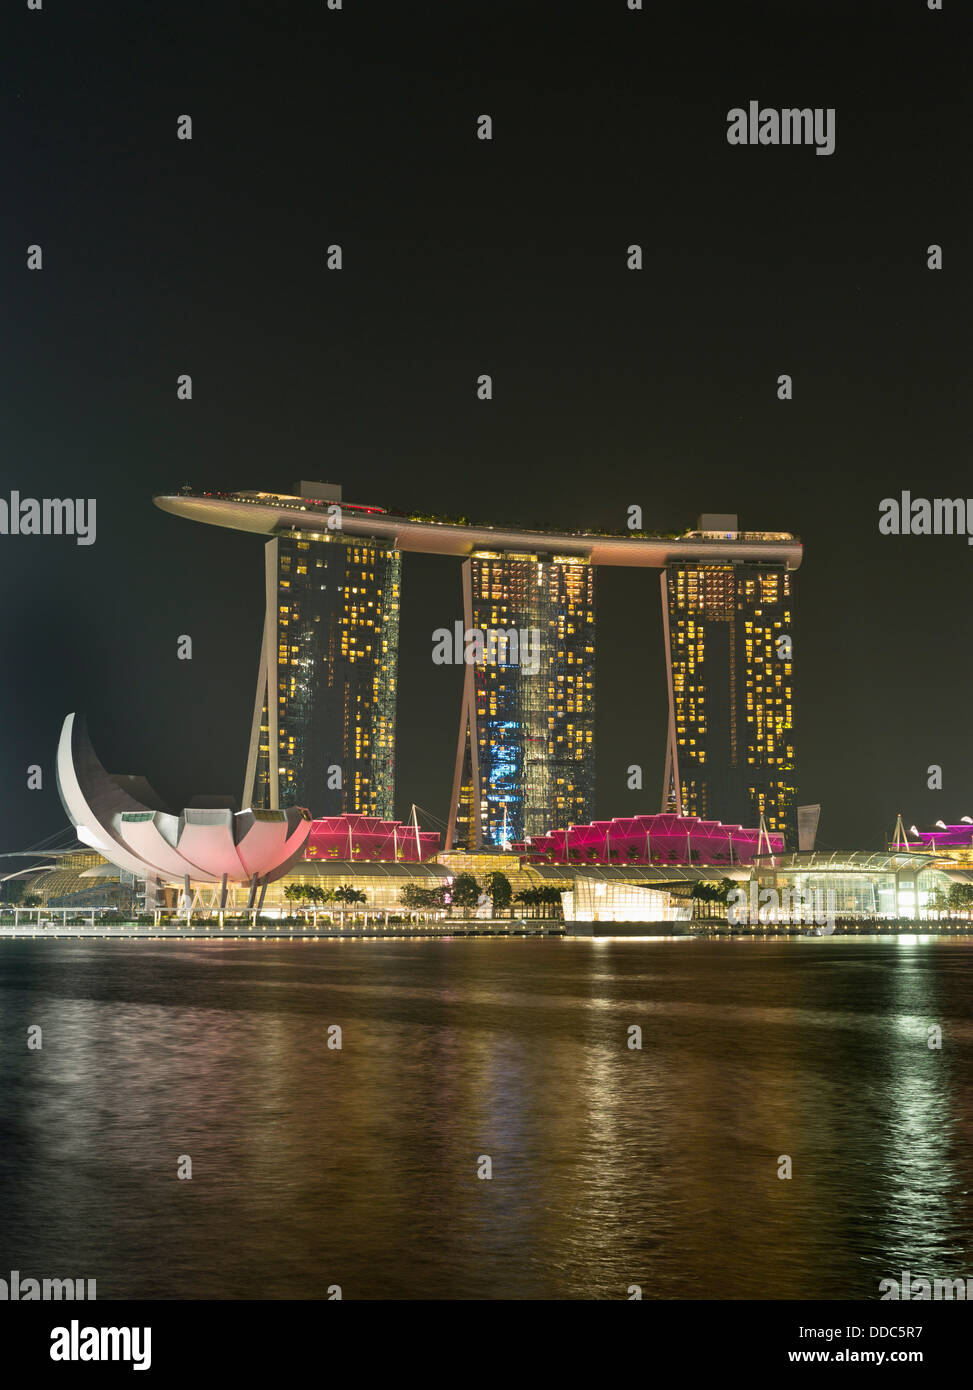 Dh Marina Bay CENTRE-VILLE SINGAPOUR Soir Nuit lumières crépuscule Marina Bay Sands Hotel hôtels Skyline Banque D'Images